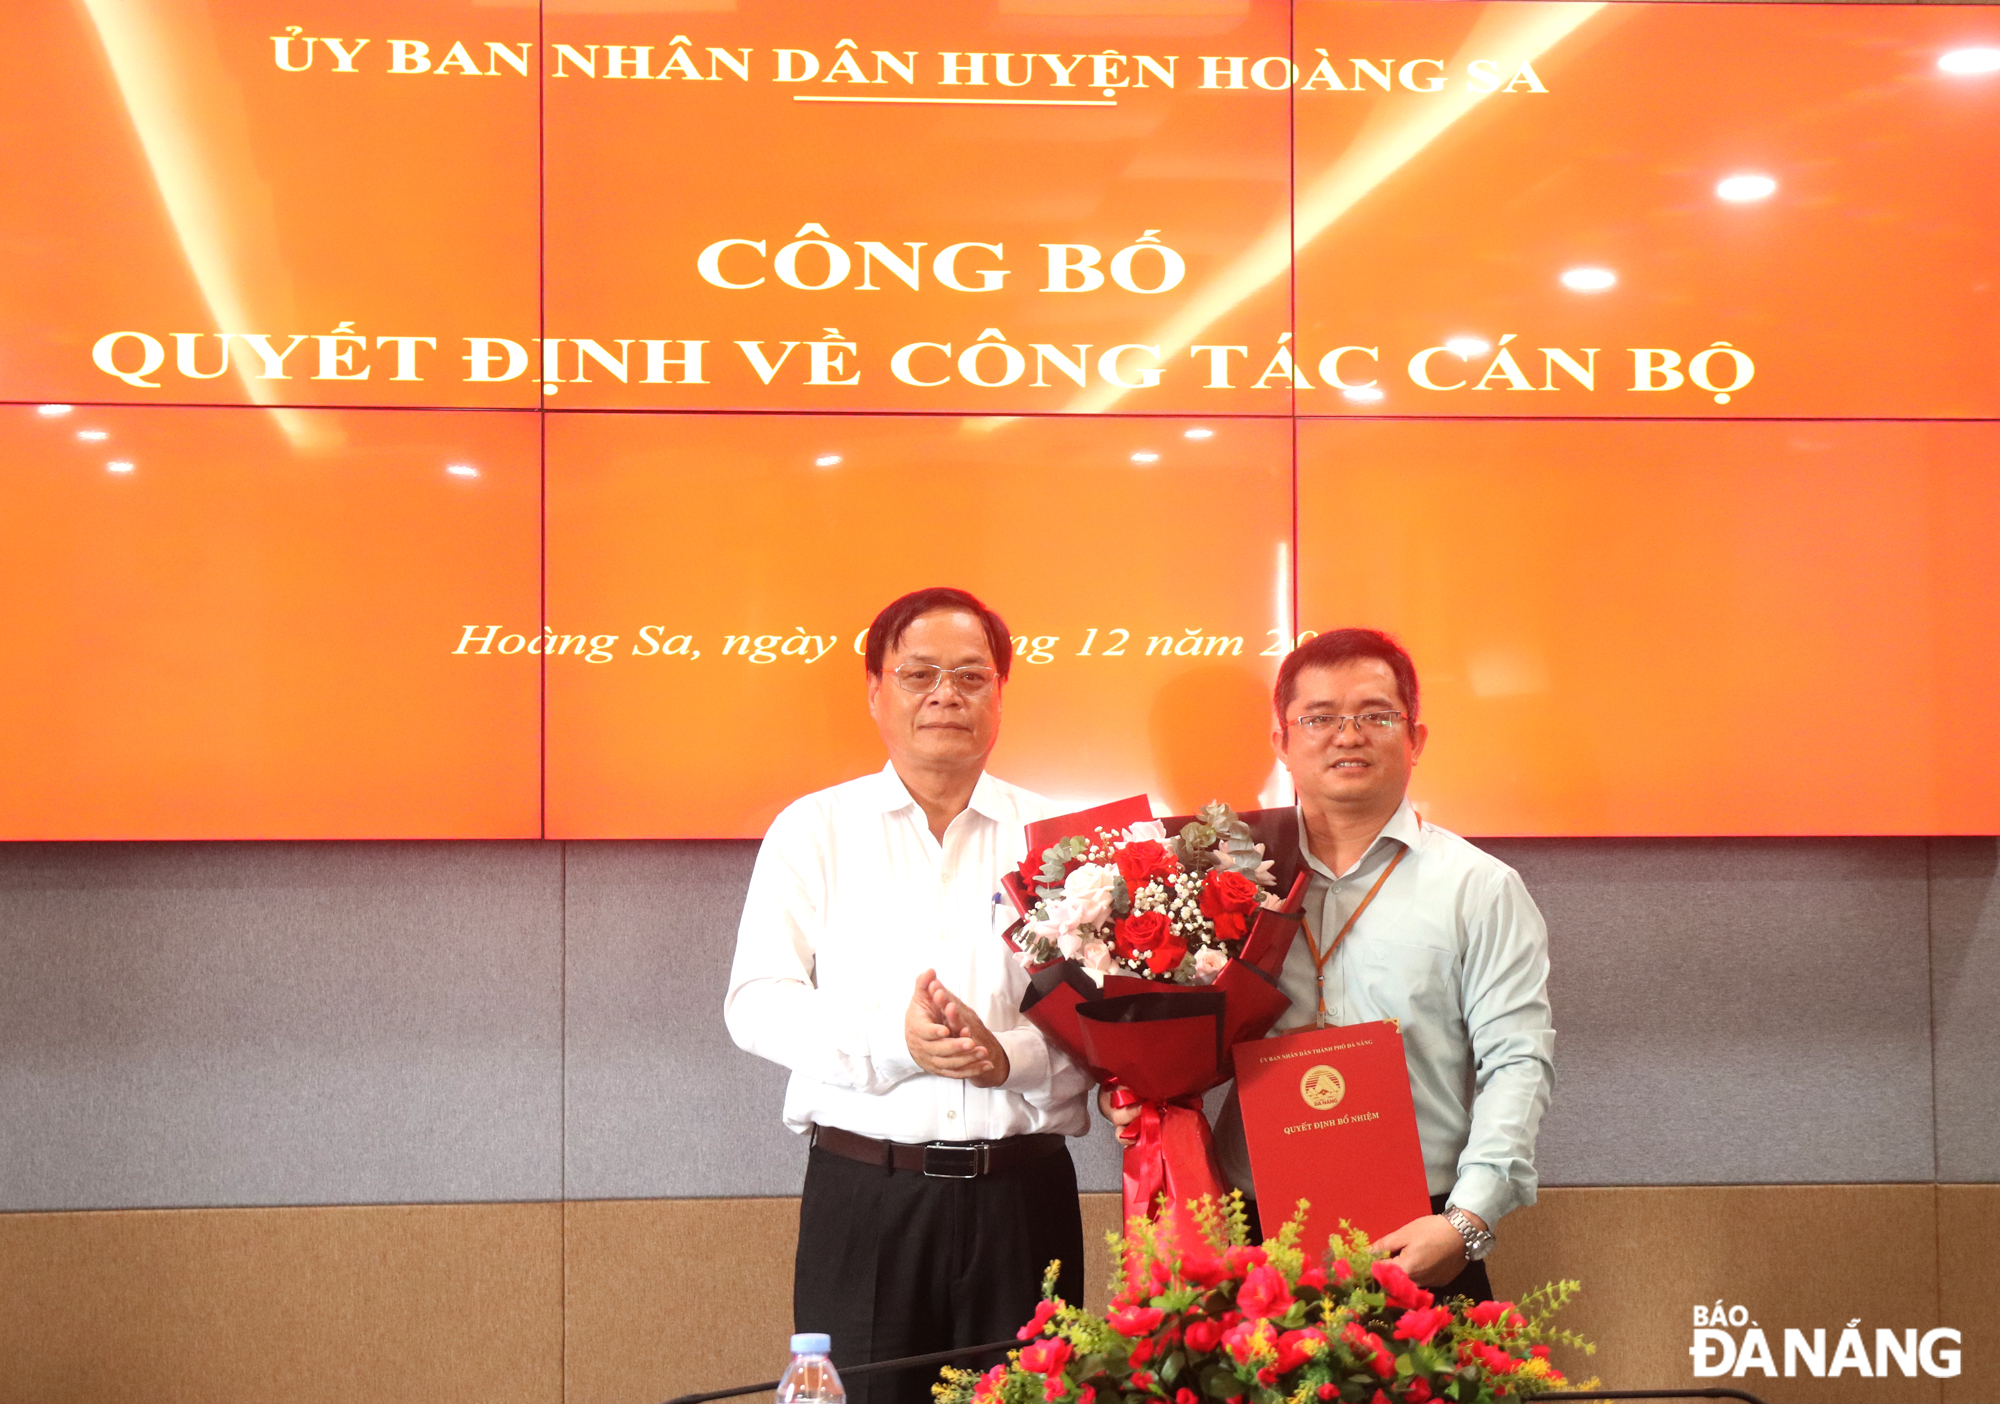 Ông Lê Tiến Công được bổ nhiệm Chánh văn phòng UBND huyện Hoàng Sa, thành phố Đà Nẵng